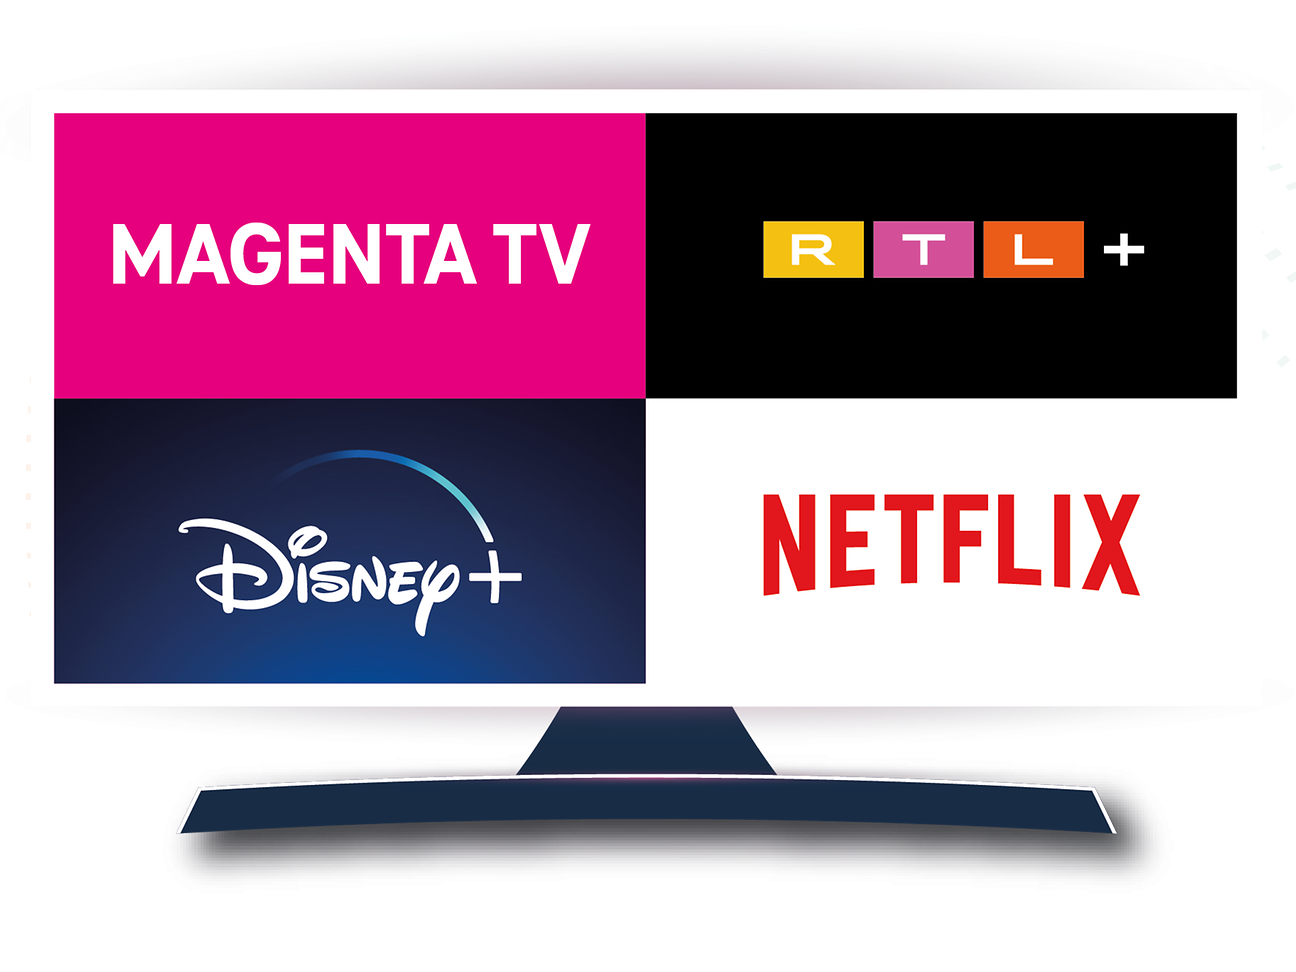 magenta tv live stream free